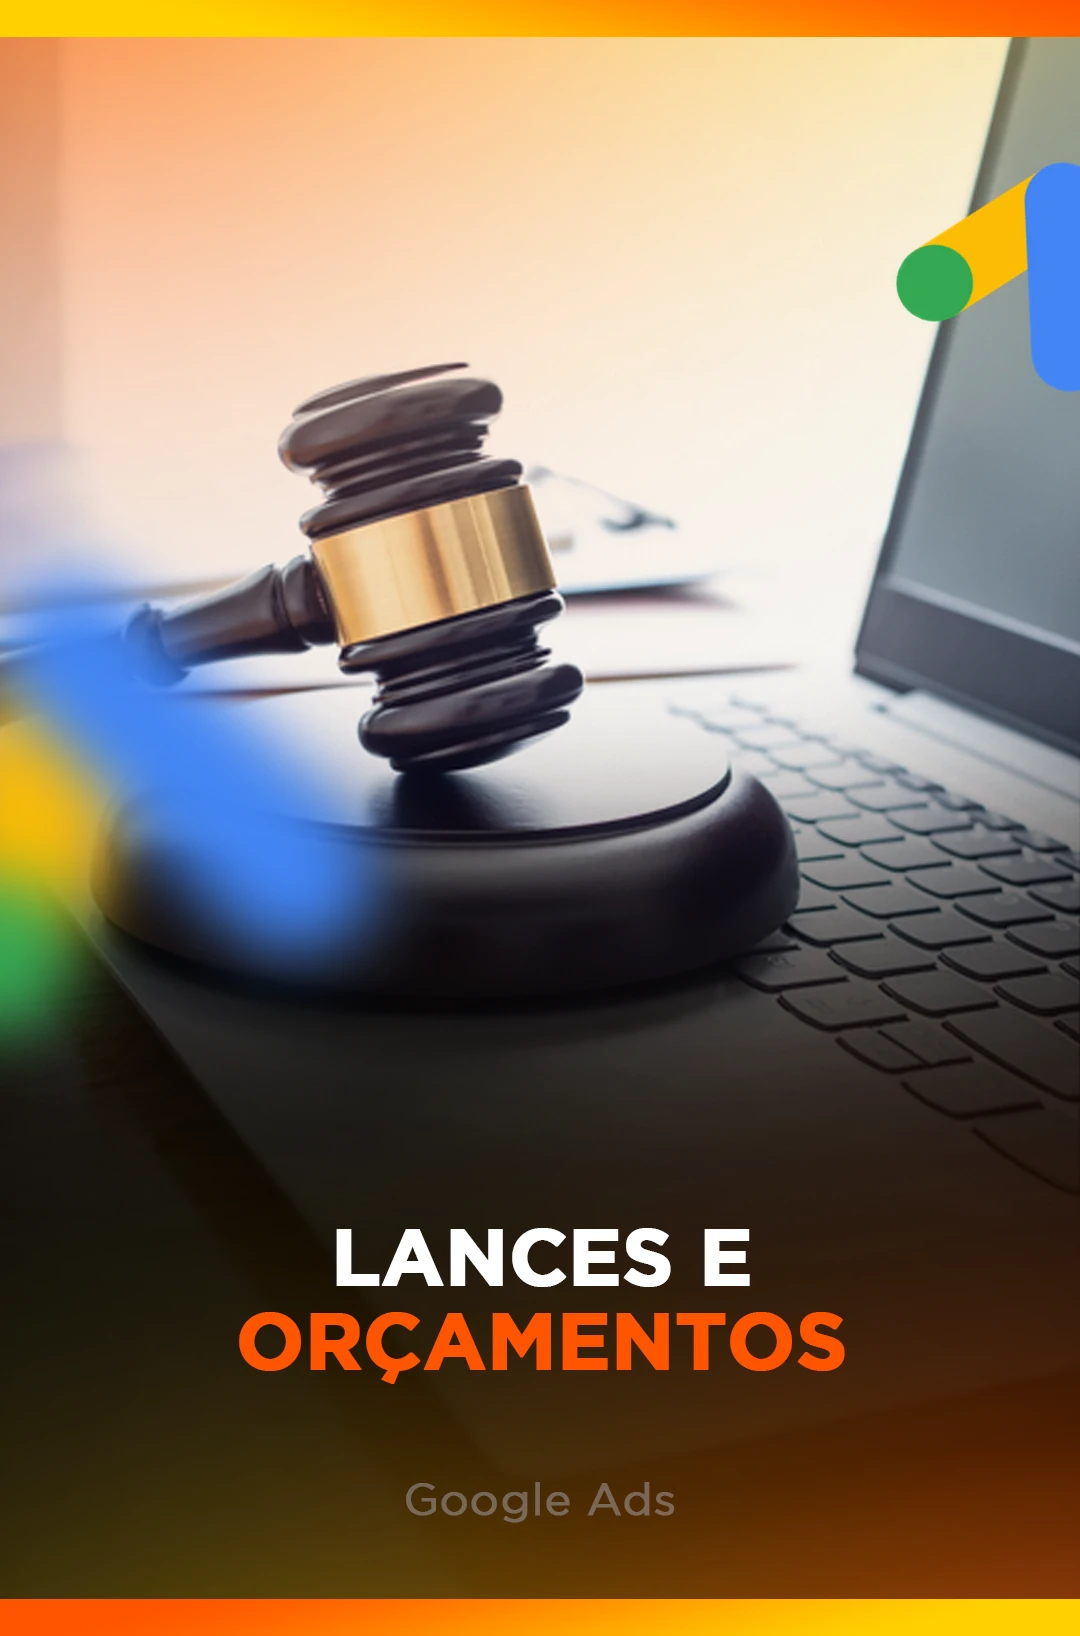 LANCES E ORÇAMENTOS - GOOGLE ADS